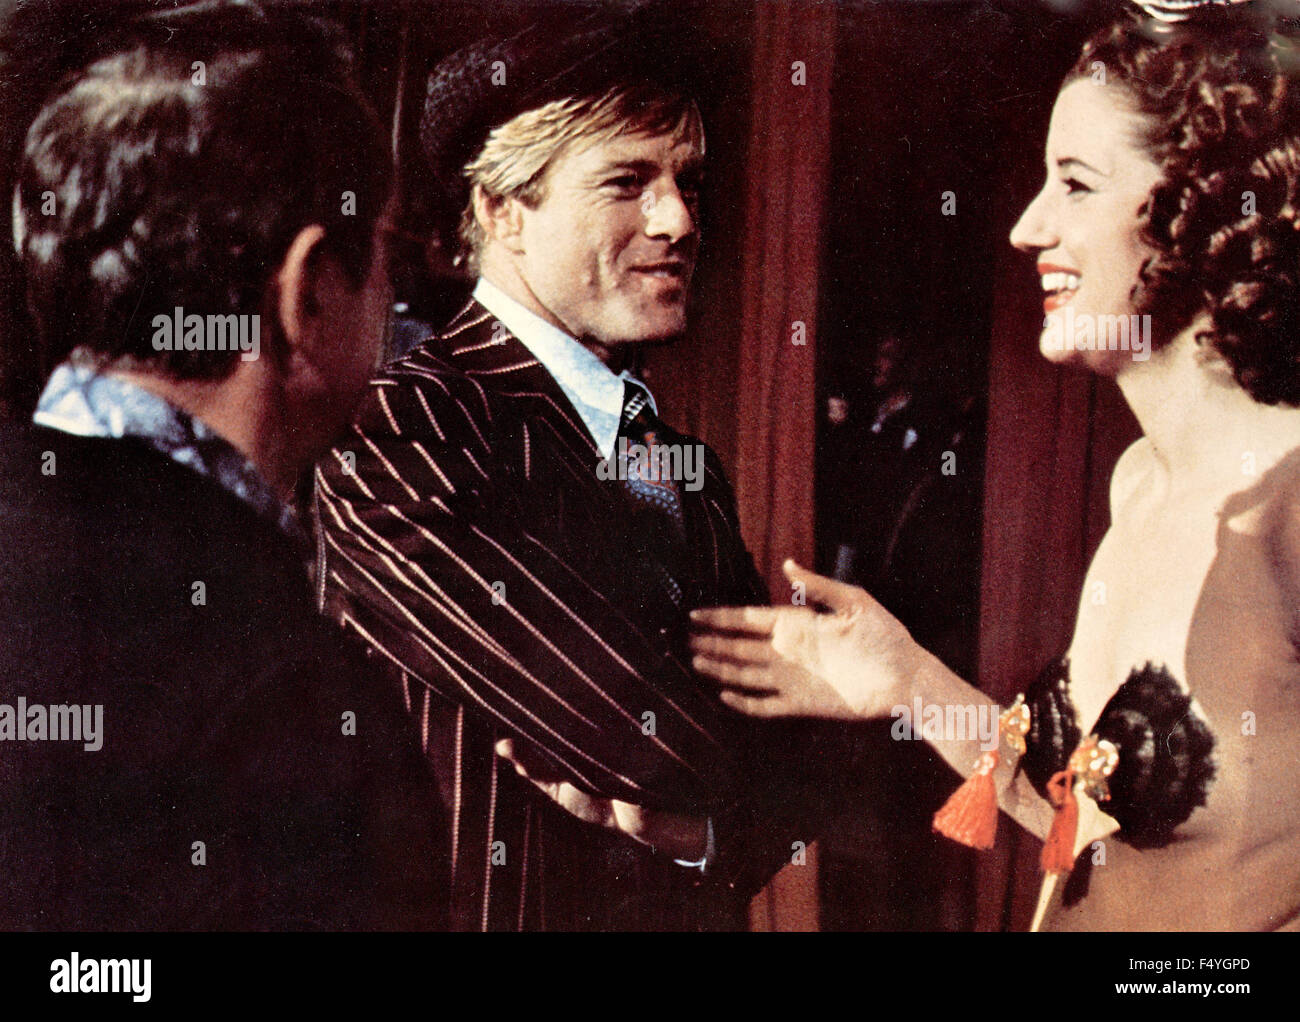 L'acteur américain Robert Redford dans une scène du film 'l'arnaque' Banque D'Images